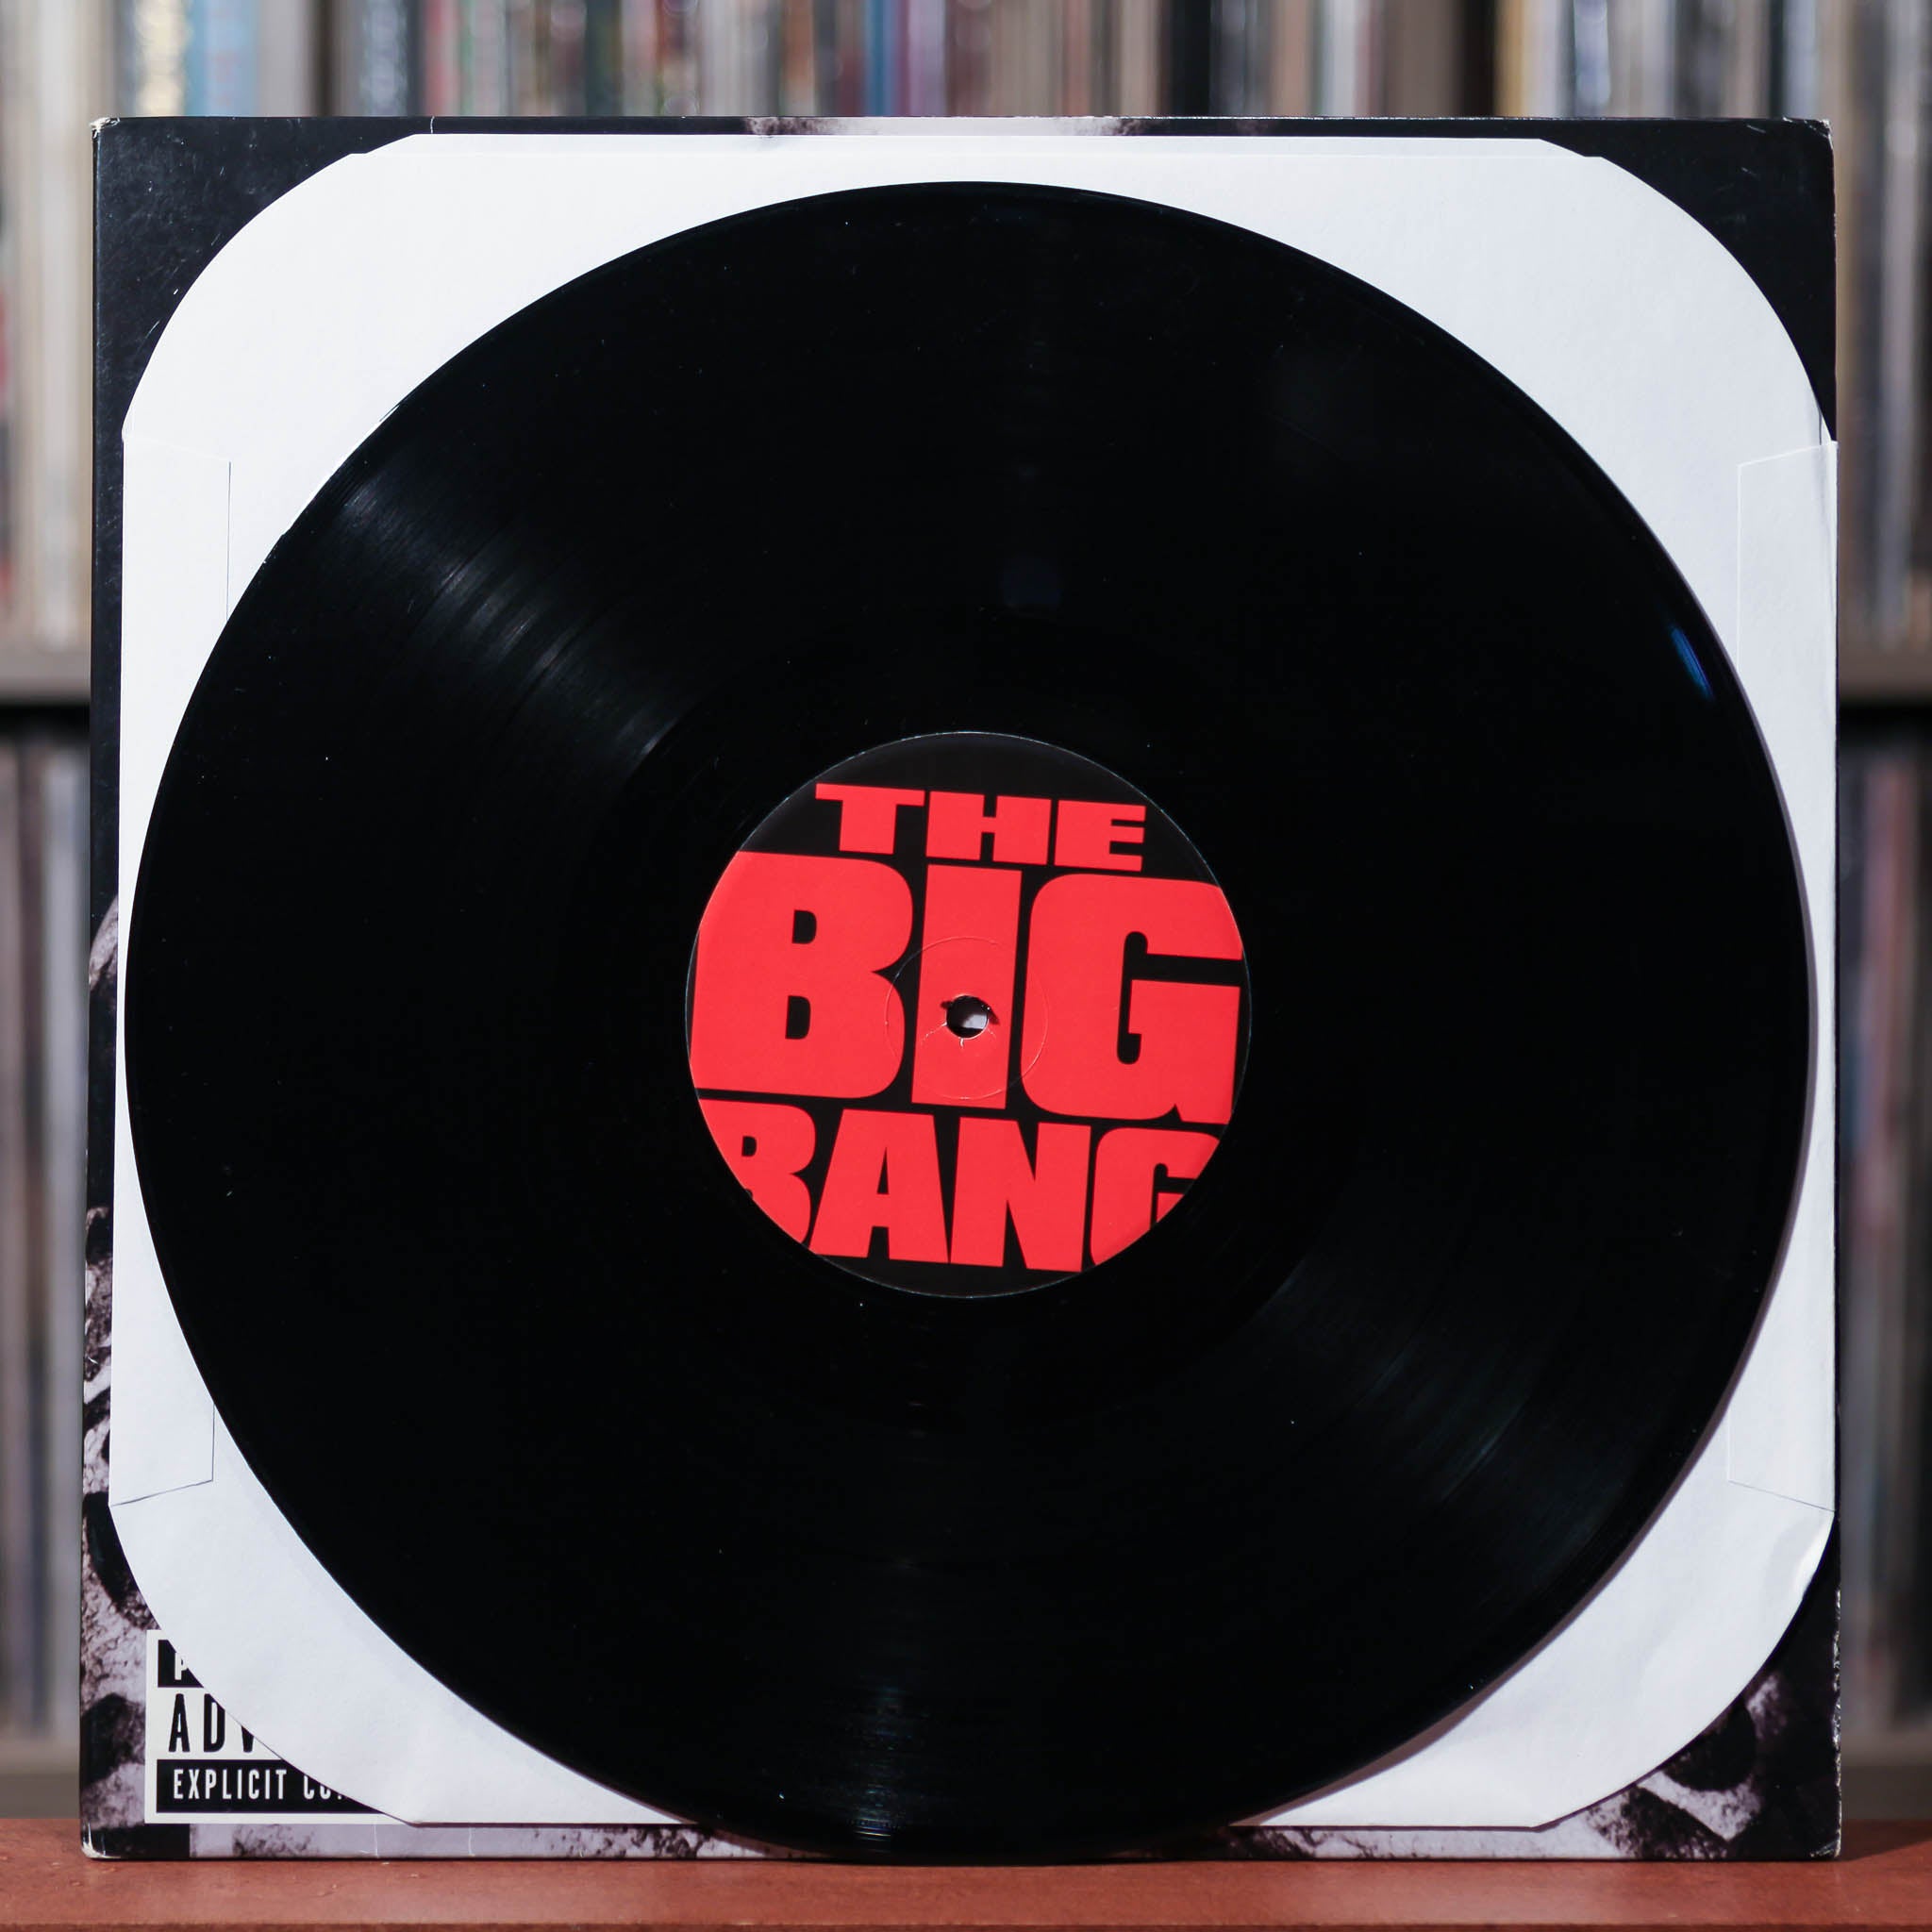 Bigg Bangg Records